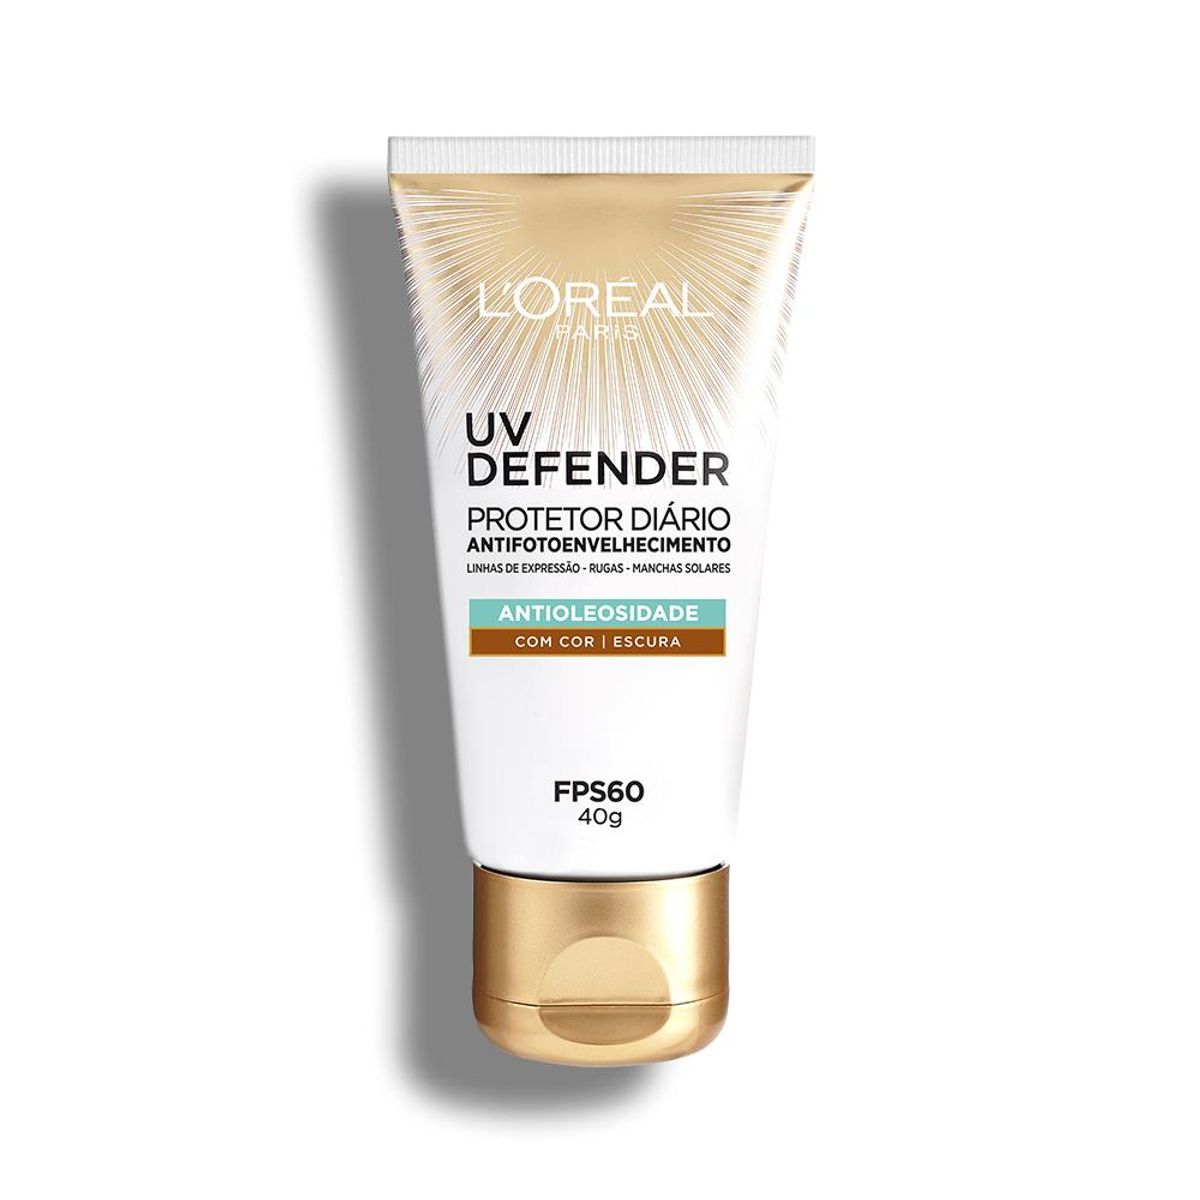 Protetor Solar Facial L'Oréal Paris UV Defender Antioleosidade Cor Escura FPS 60, 40g